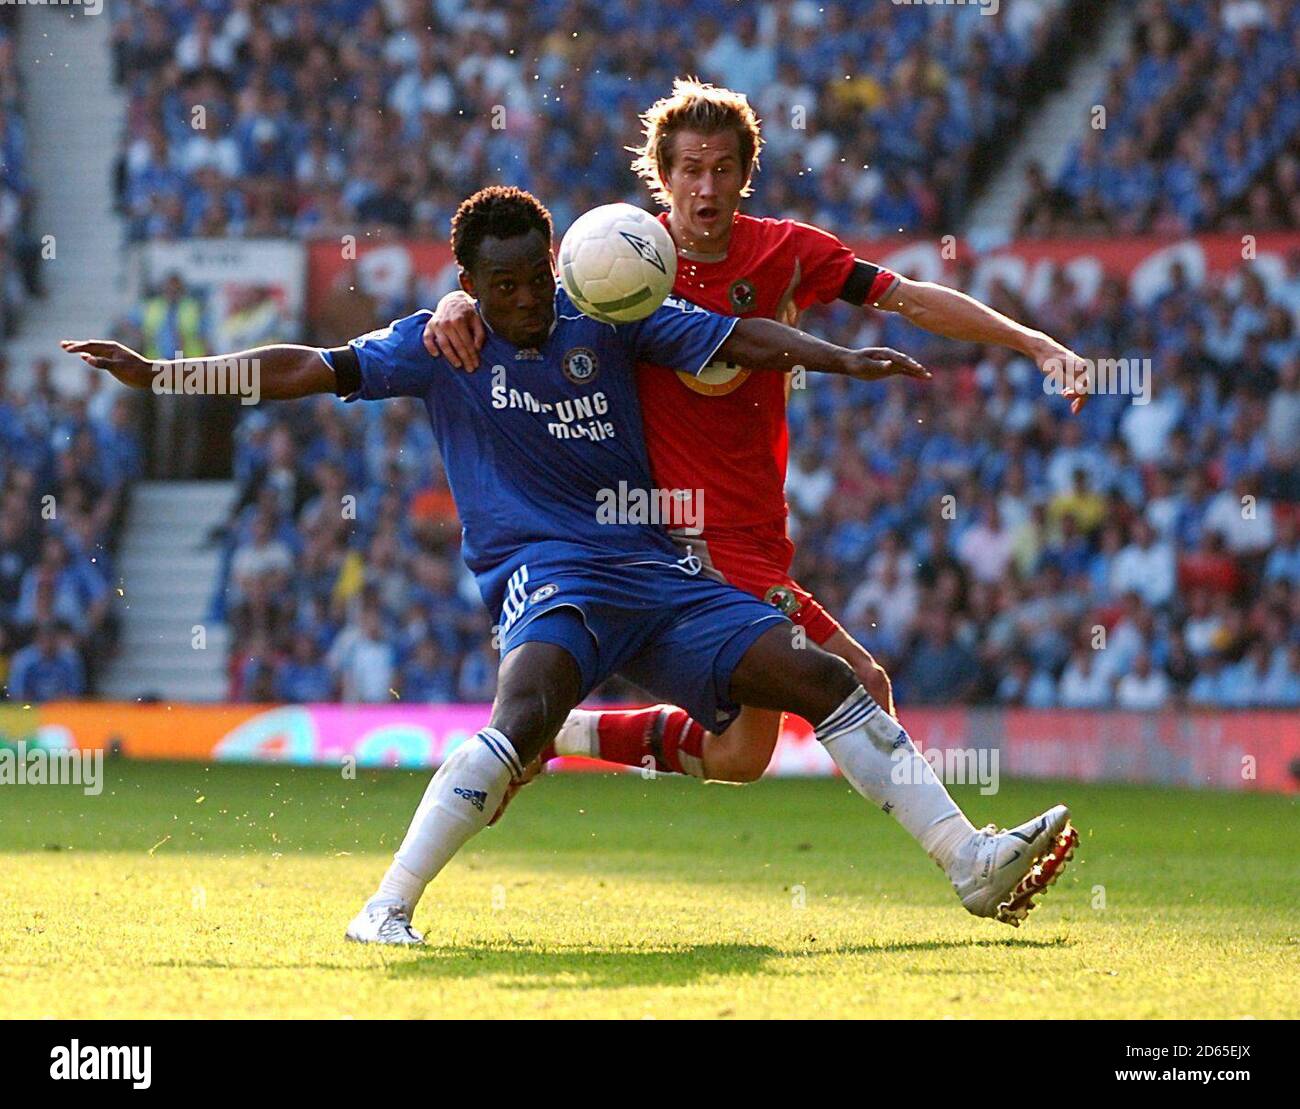 Chelsea's Michael Essien and Blackburn Rovers' Morten Gamst Pedersen battle for the ball Stock Photo